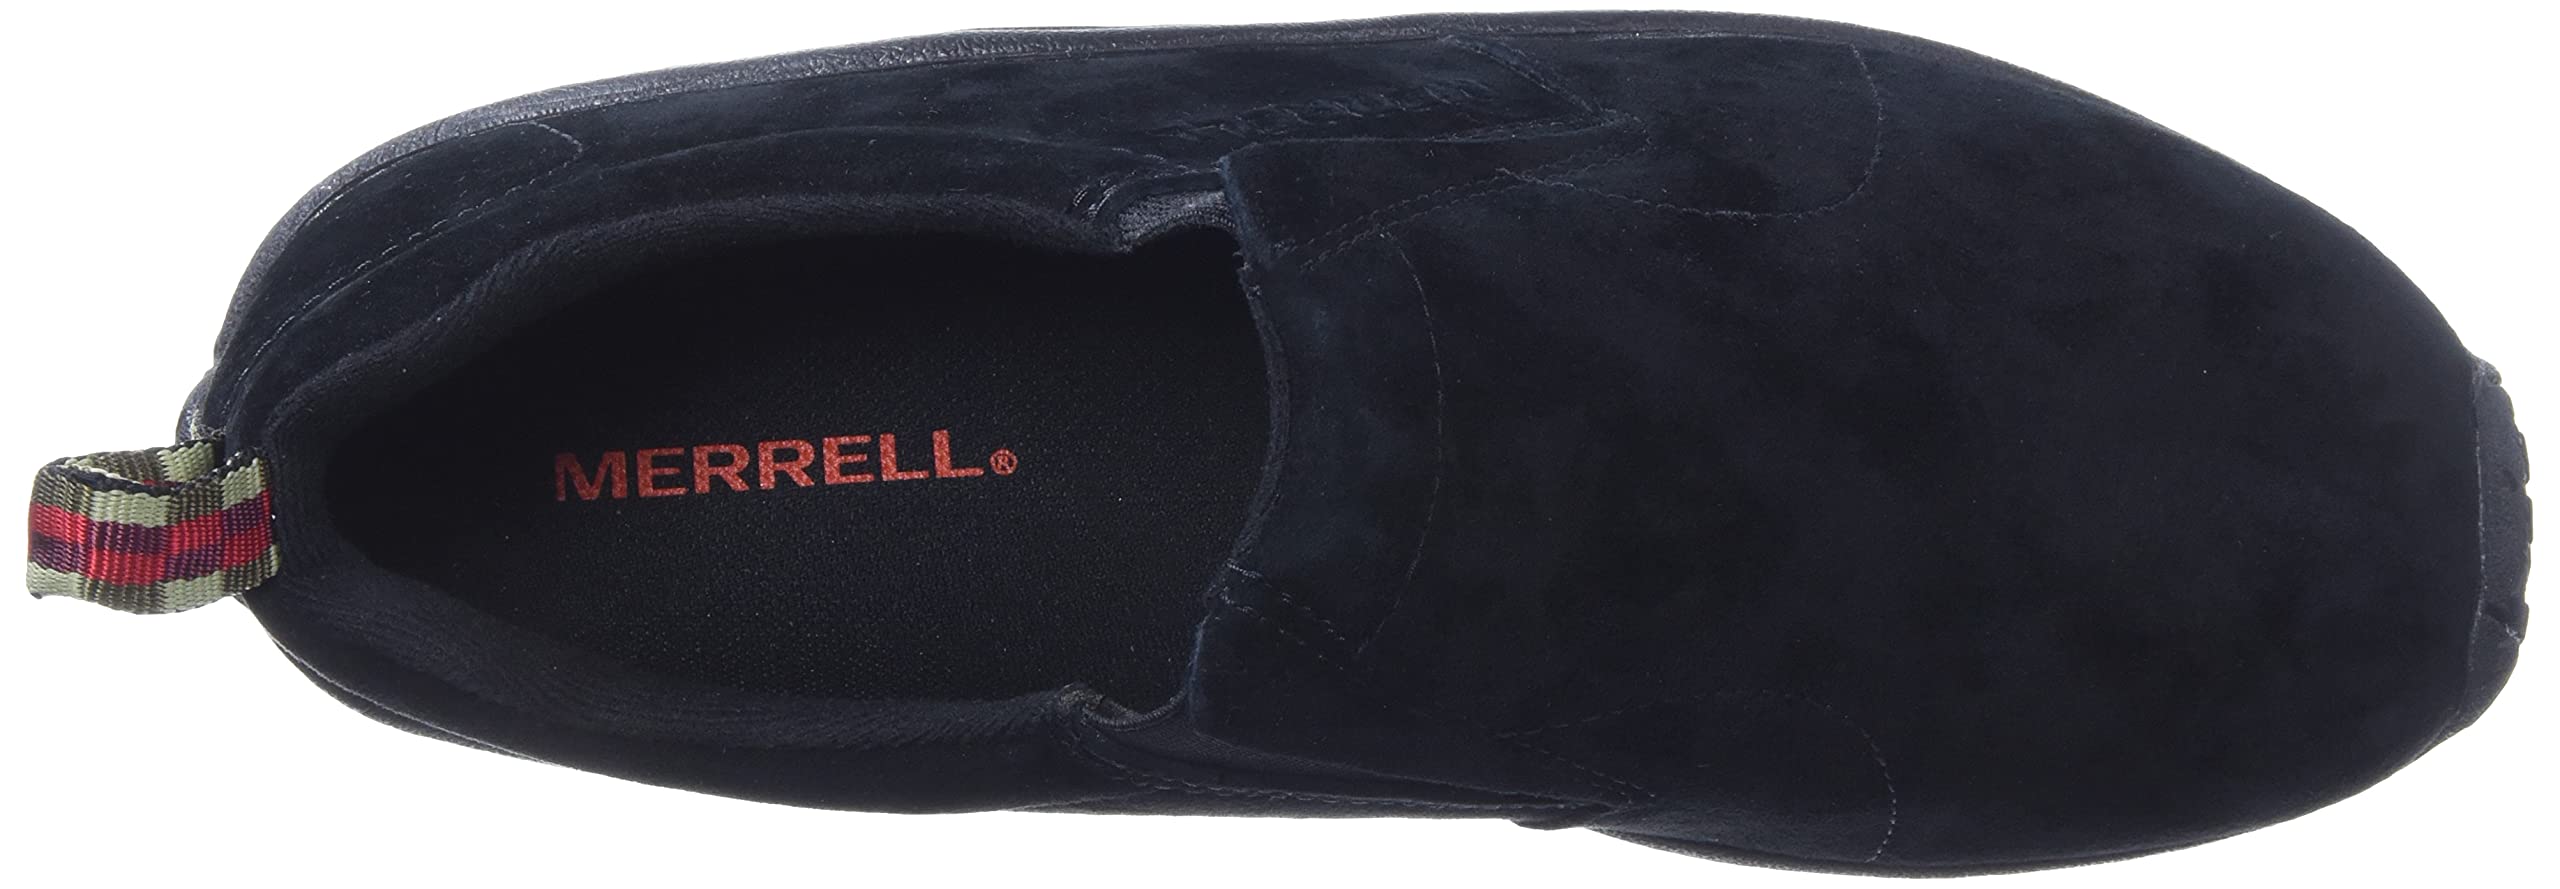 Merrell Men's Jungle Leather Slip-On Shoe